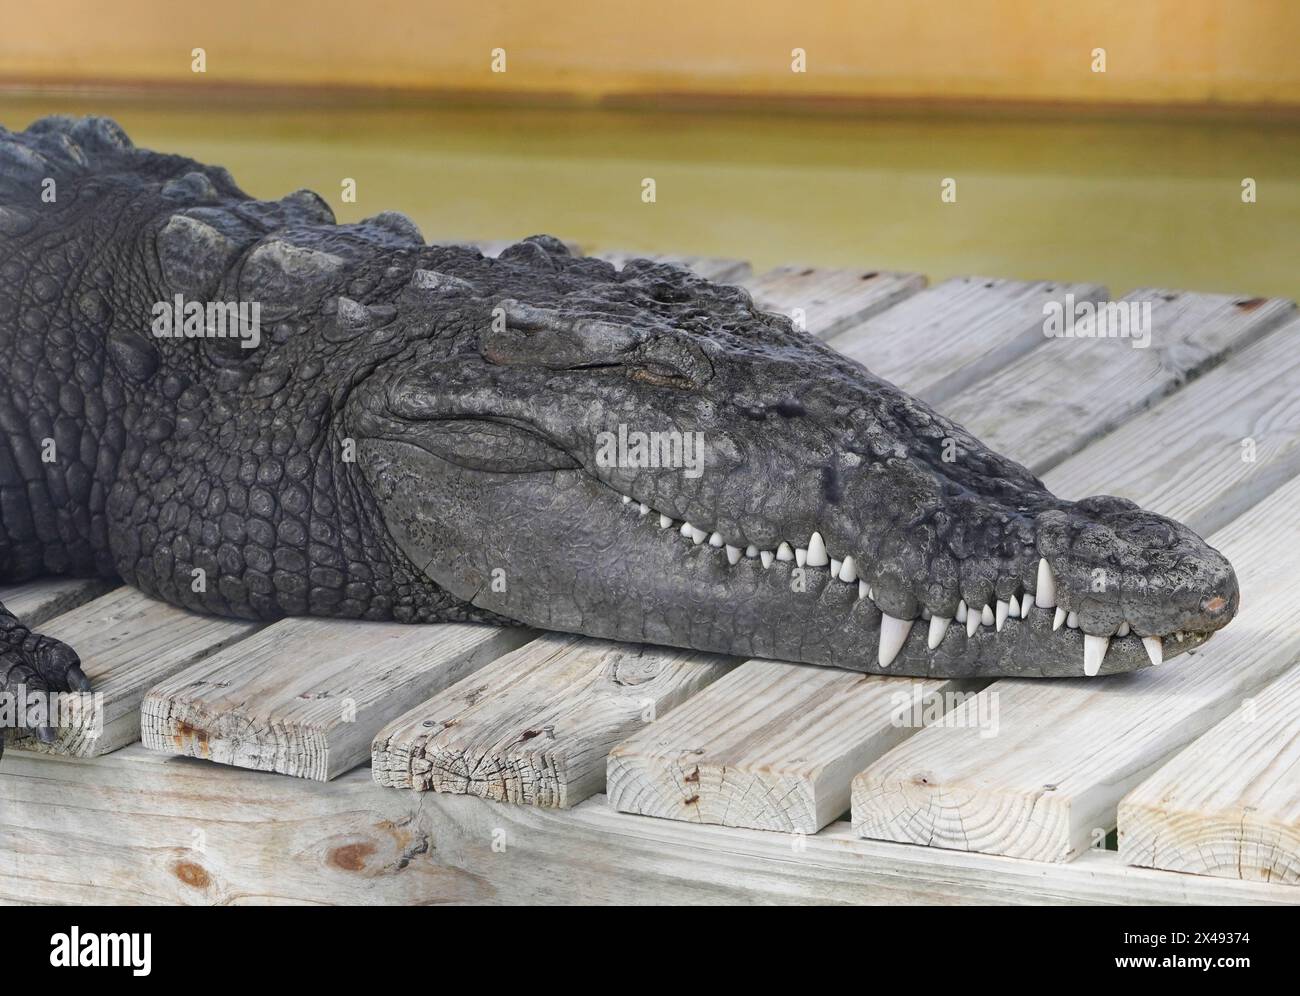 17.04.24, Everglades City, Florida, US-amerikanischer Alligator (Alligator mississippiensis) in den Florida Everglades, von einem Luftschiff aus gesehen, Everglade City, Florida, Mittwoch, 17. April, 2024. Foto von Jennifer Graylock-Graylock.com 917-519-7666 Stockfoto